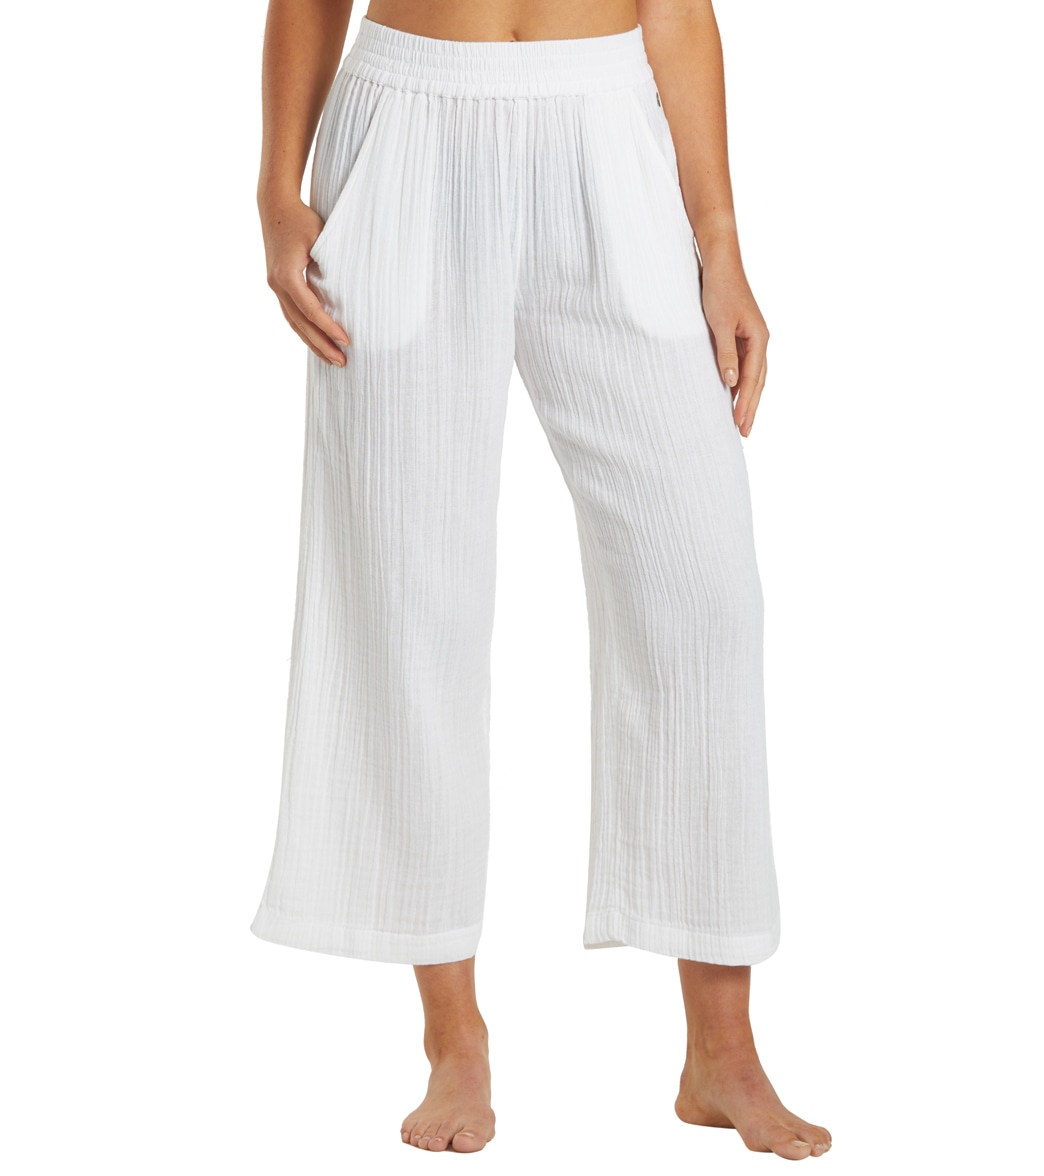 Rip Curl Women's Premium Surf Beach Pants - White Large Cotton - Swimoutlet.com